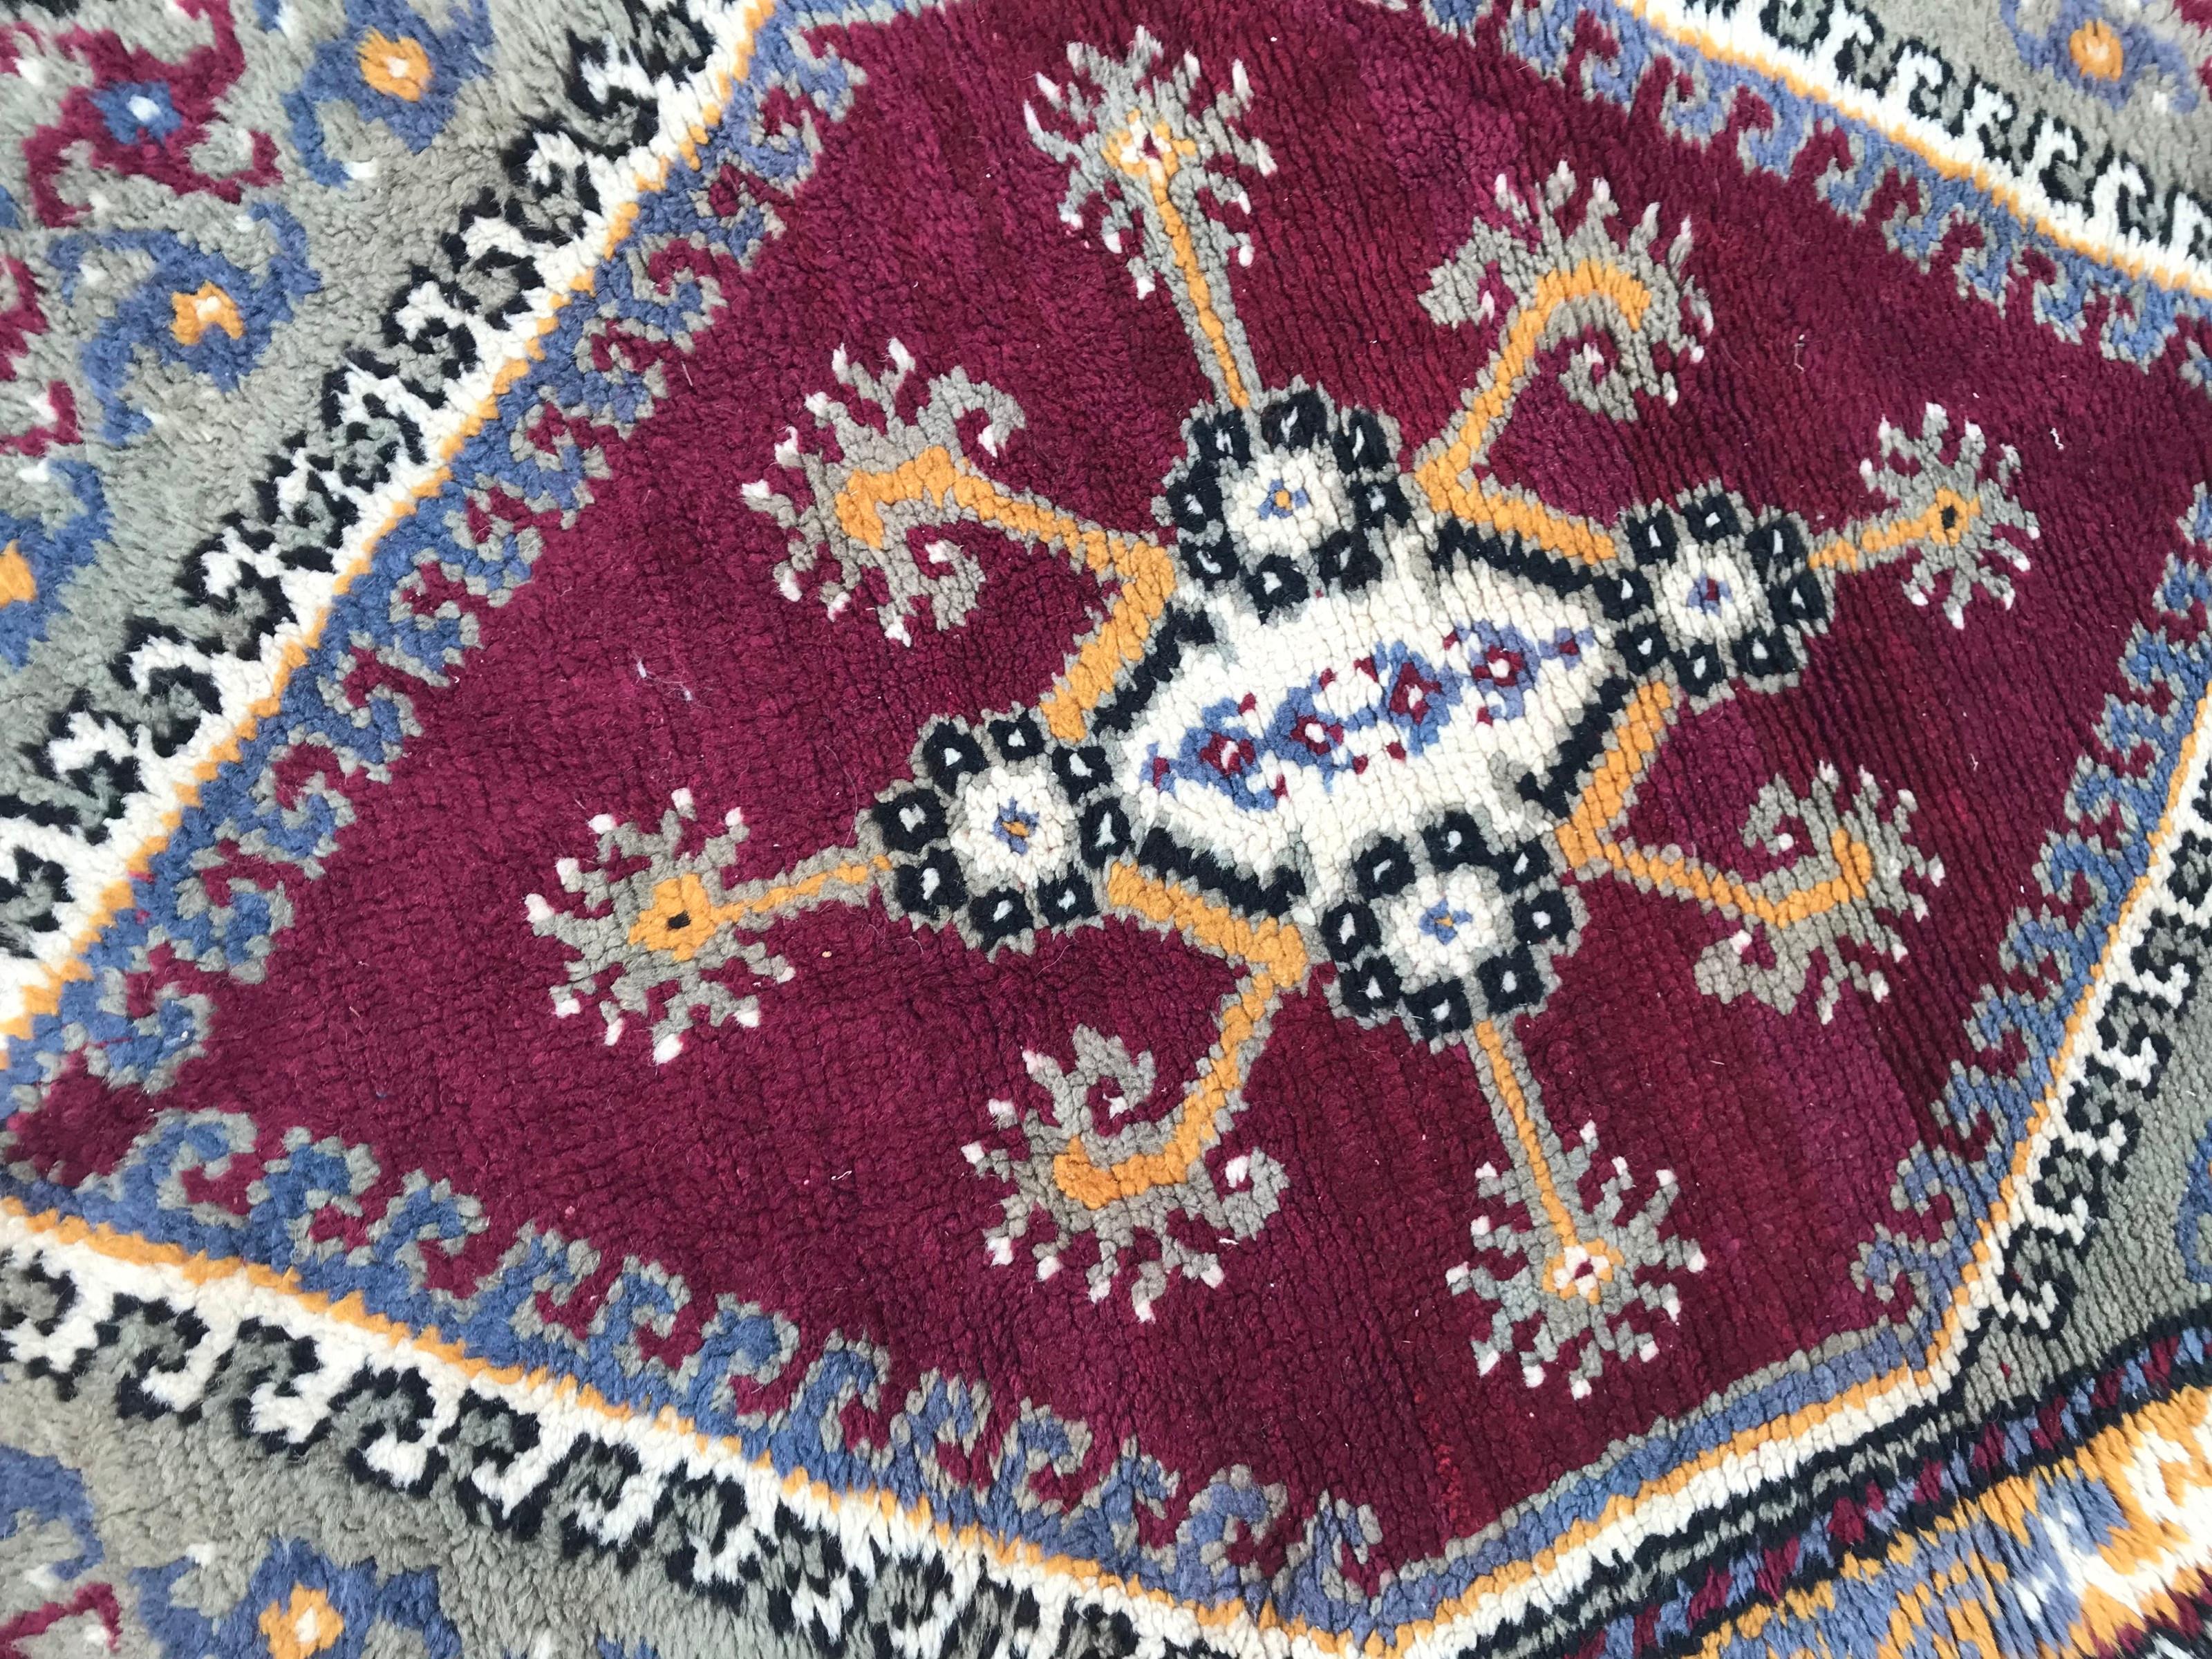 Schöner Teppich aus der Mitte des 20. Jahrhunderts mit geometrischem Muster und einem violetten Farbfeld, vollständig handgeknüpft mit Wollsamt auf Baumwollgrund.

✨✨✨
